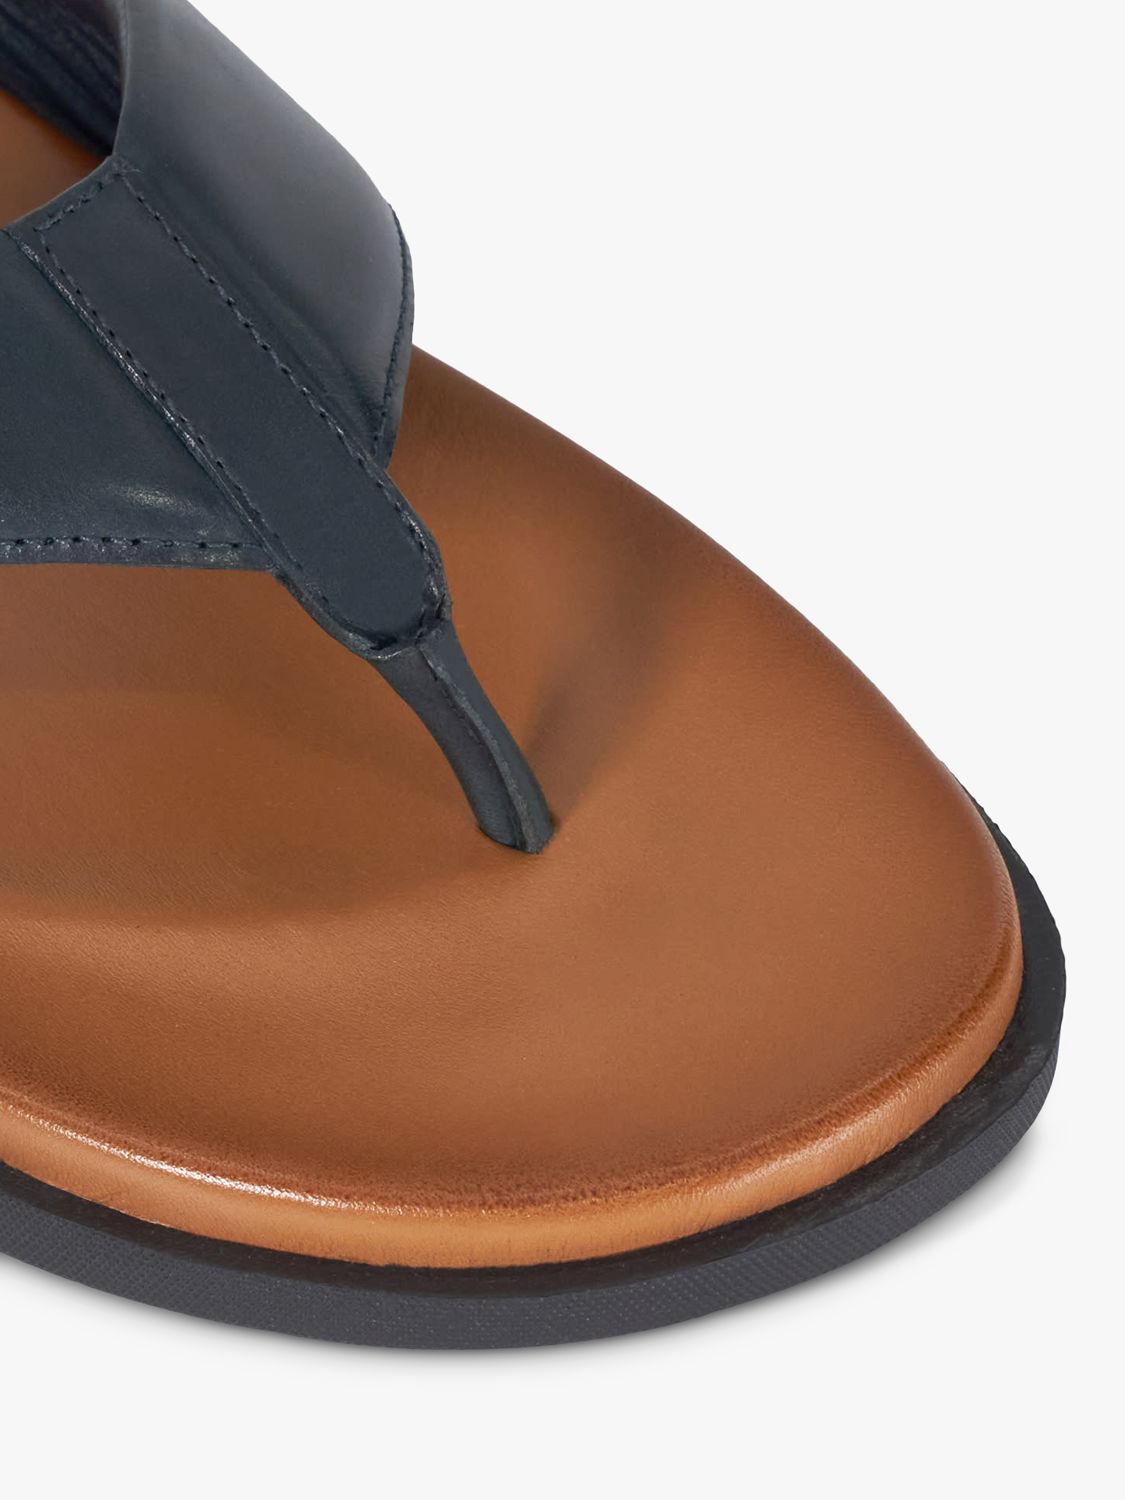 Dune Inspires Leather Toepost Sandal, Navy, 11